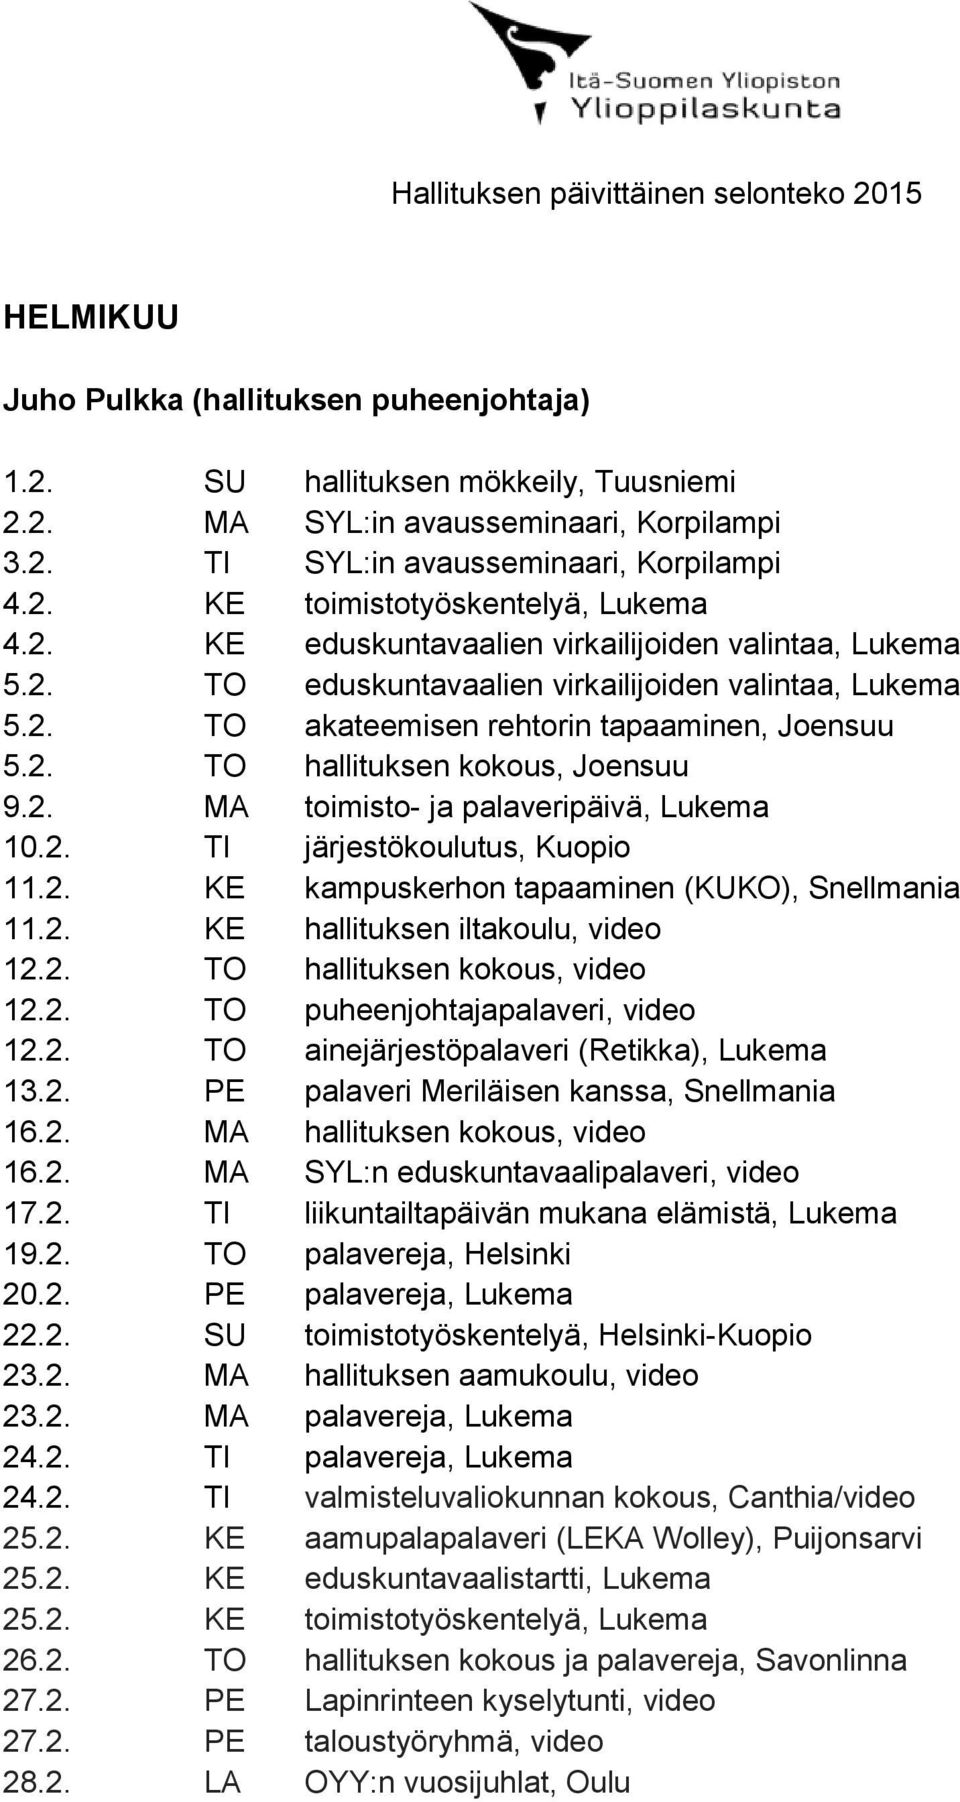 2. TO hallituksen kokous, Joensuu 9.2. MA toimisto- ja palaveripäivä, Lukema 10.2. TI järjestökoulutus, Kuopio 11.2. KE kampuskerhon tapaaminen (KUKO), Snellmania 11.2. KE hallituksen iltakoulu, video 12.